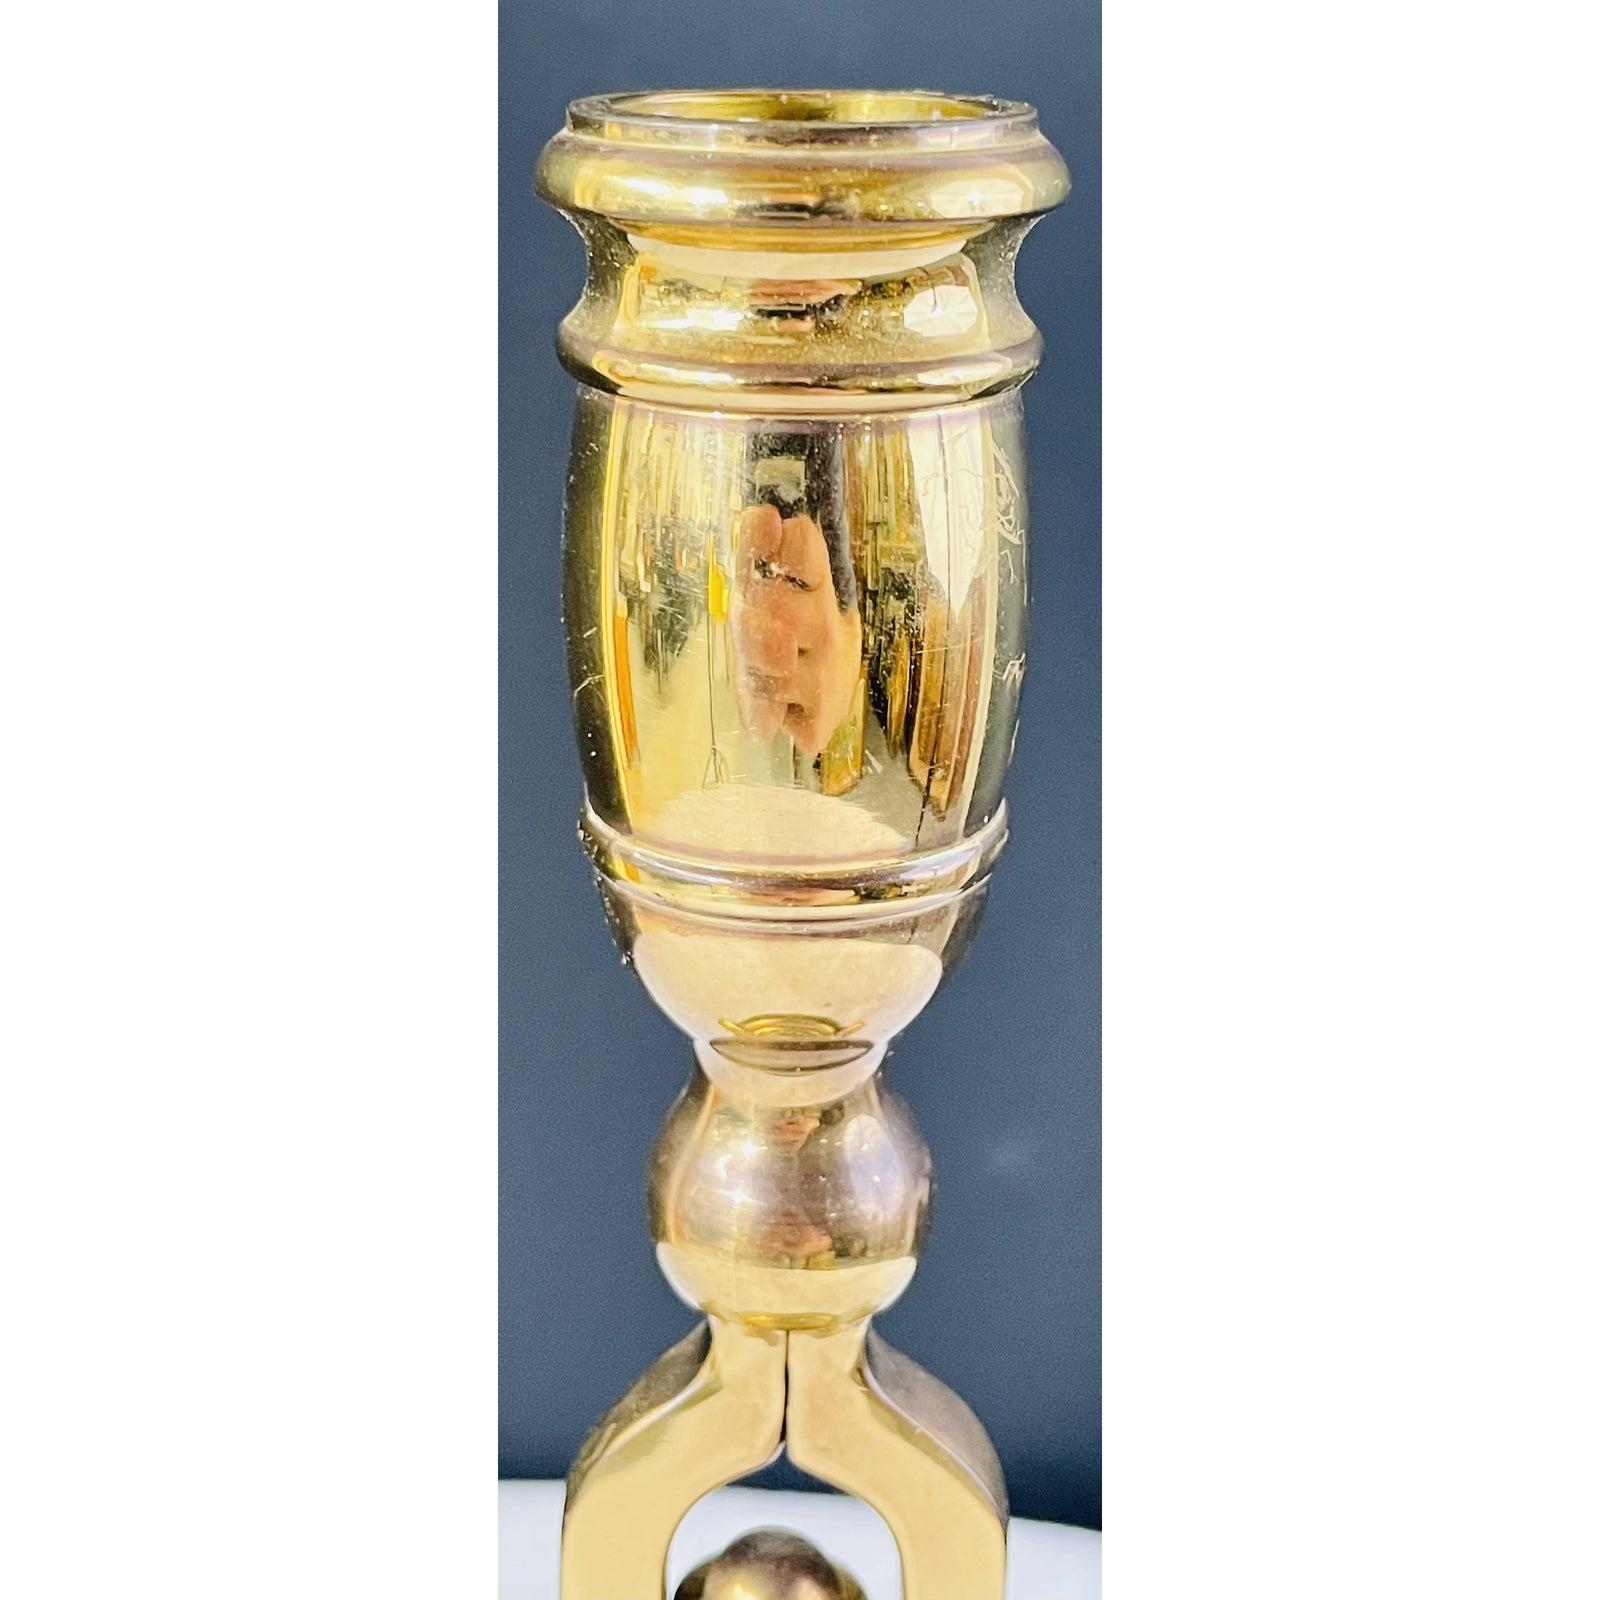 Chandelier de taverne en laiton de la fin du 19e siècle, de style anglais victorien, avec cloche de service. La surface en laiton présente une certaine décoloration due à l'âge, mais dans l'ensemble, le chandelier est en bon état et ajoutera du